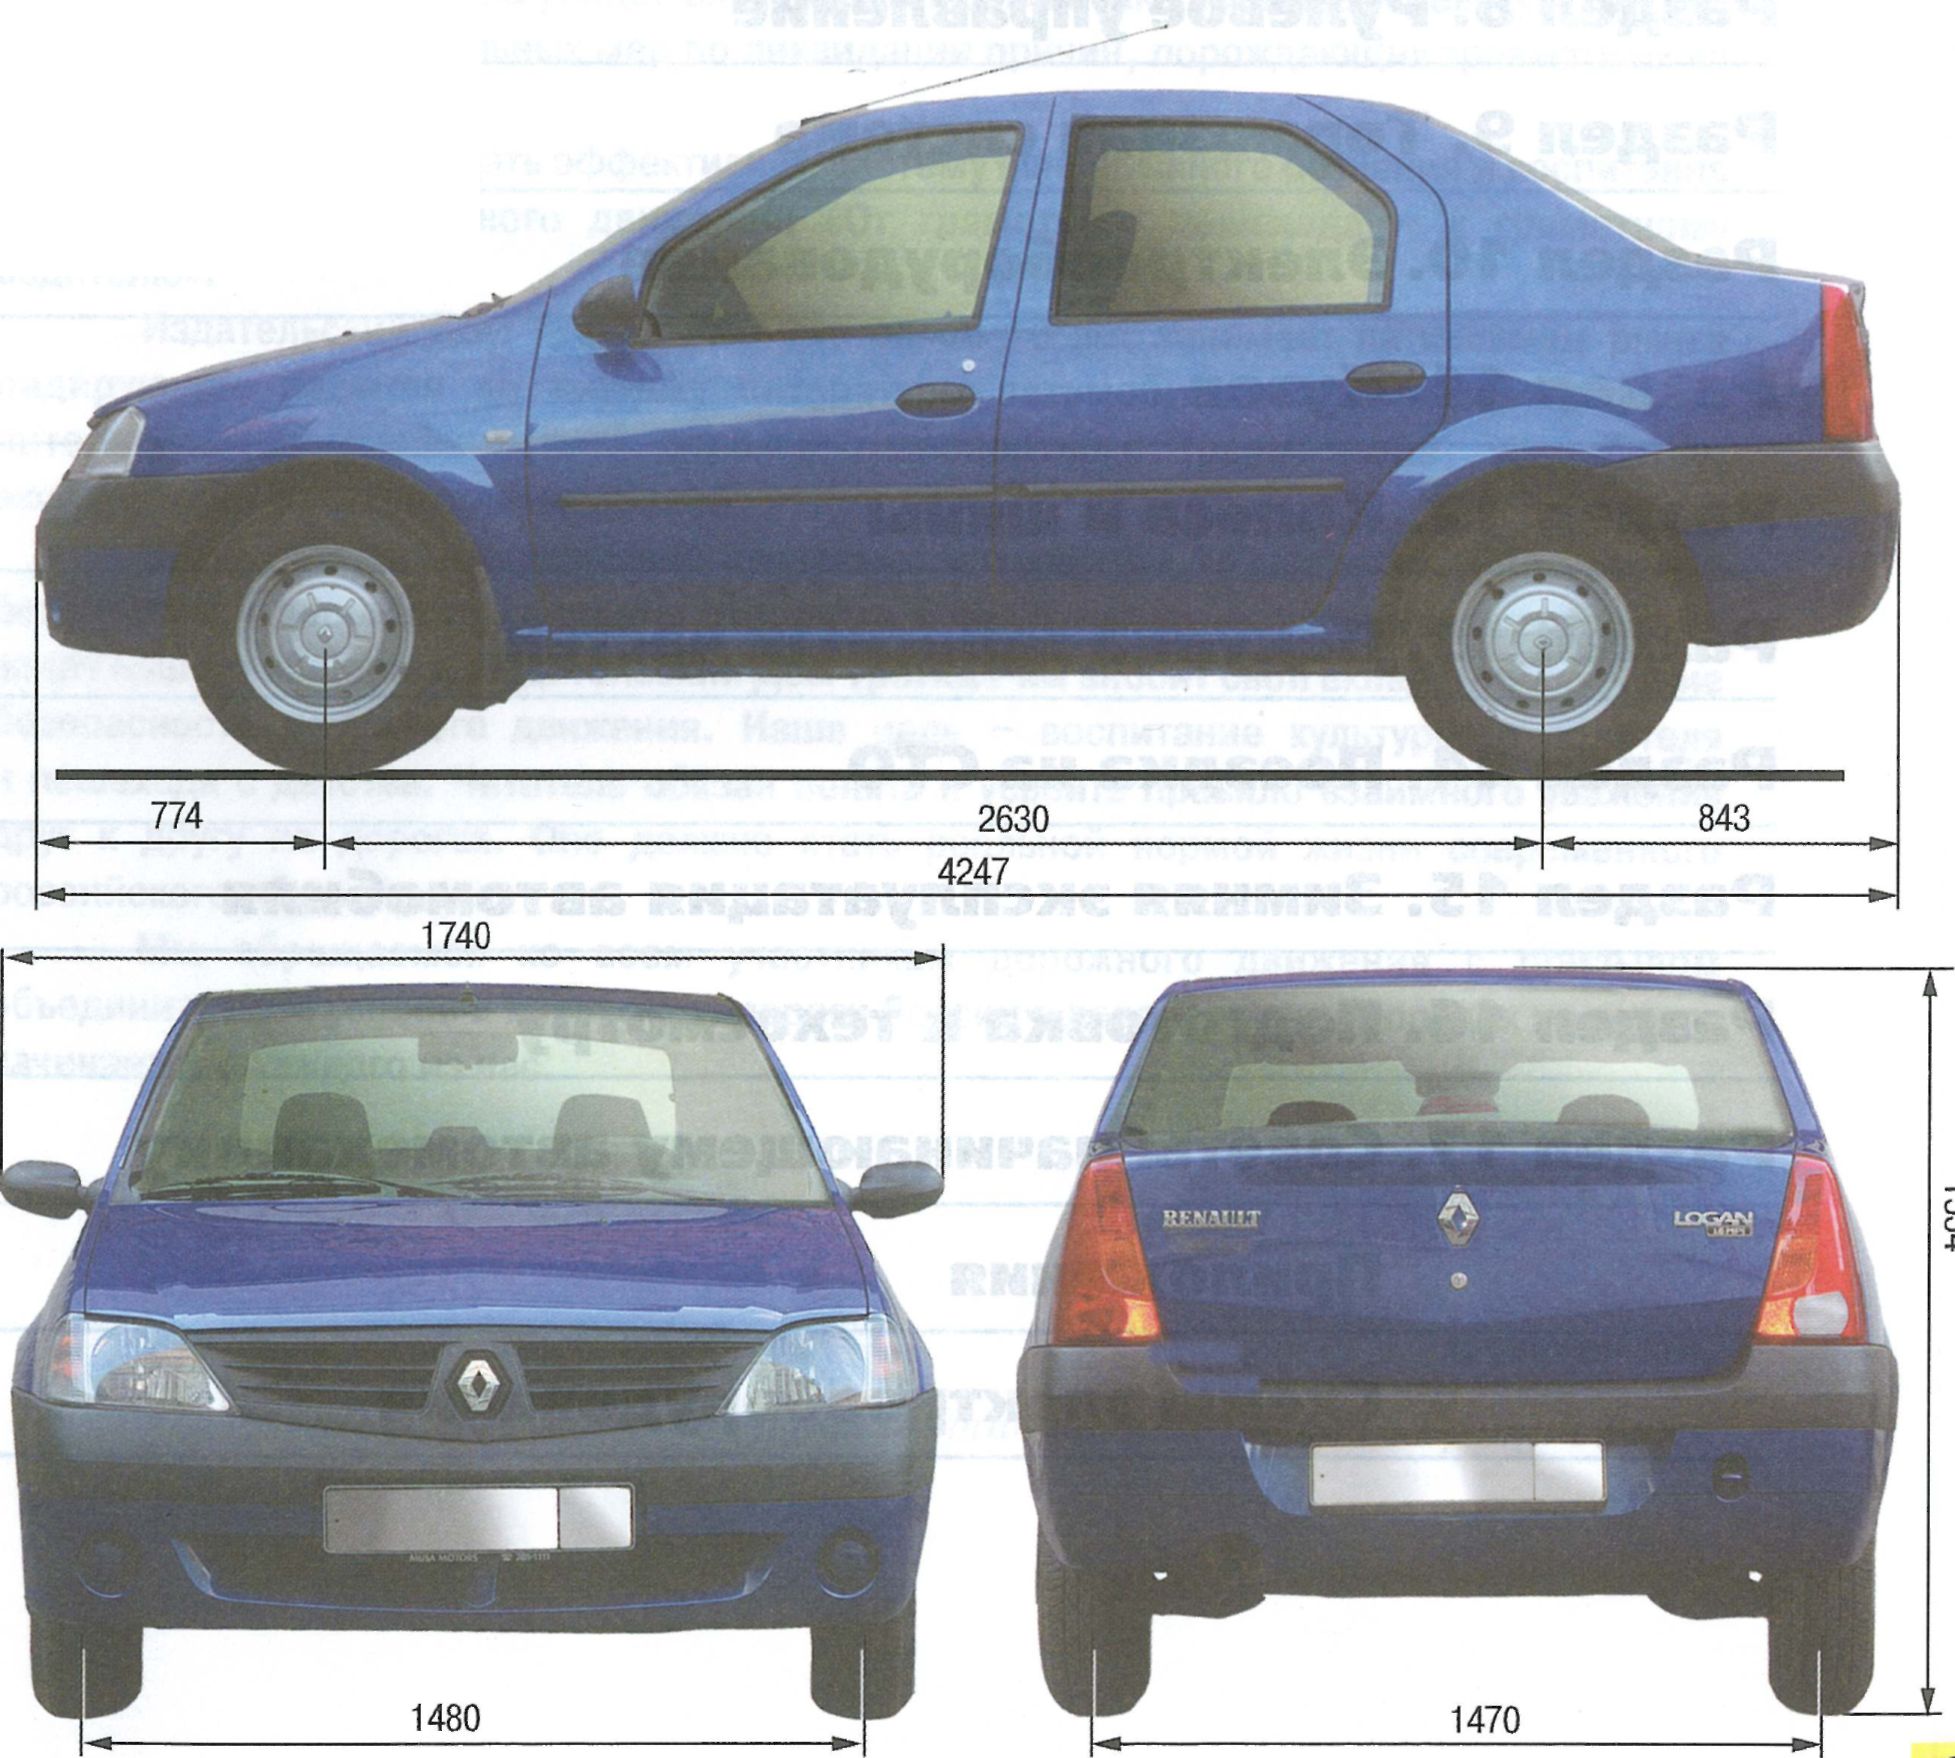 Обзор автомобиля renault logan 2011 года, его технические характеристики с двигателями 1,4 и 1,6 литра. модификация универсал, комплектации, фото, видео.